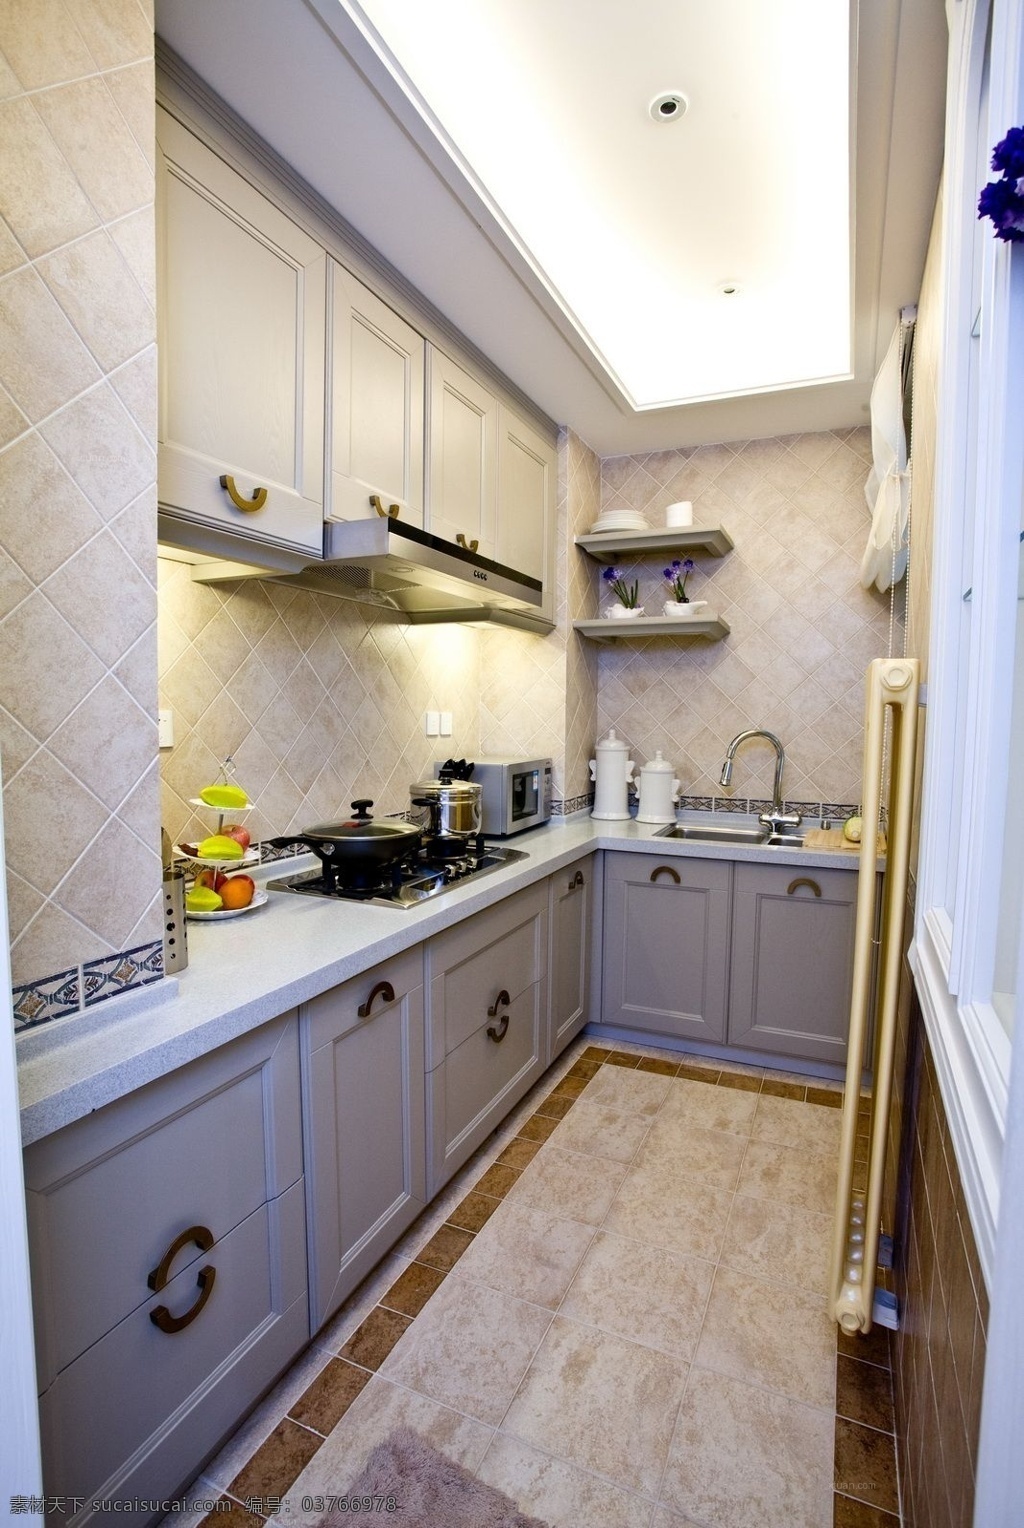 l 型 简约 风 室内设计 厨房 效果图 现代 料理台 白色 调 地砖 壁柜 吊柜 家装